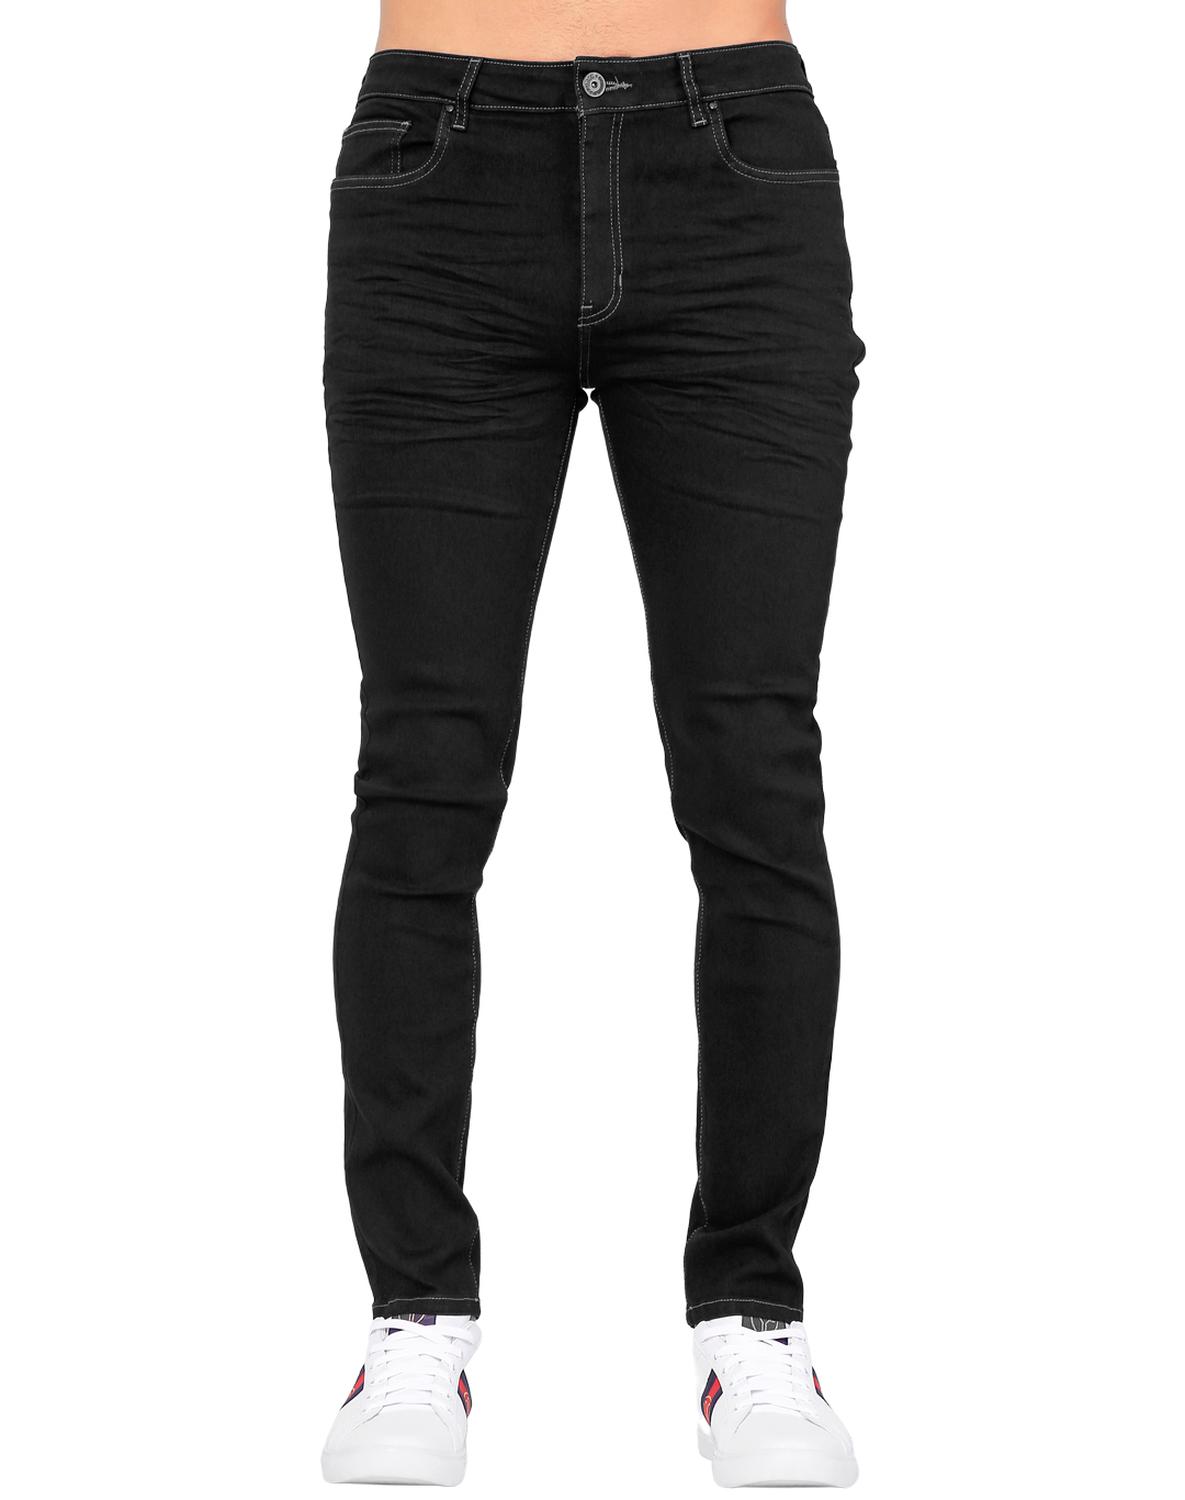 Jeans Básico Hombre Furor Negro 62105608 Mezclilla Stretch – SALVAJE  TENTACIÓN